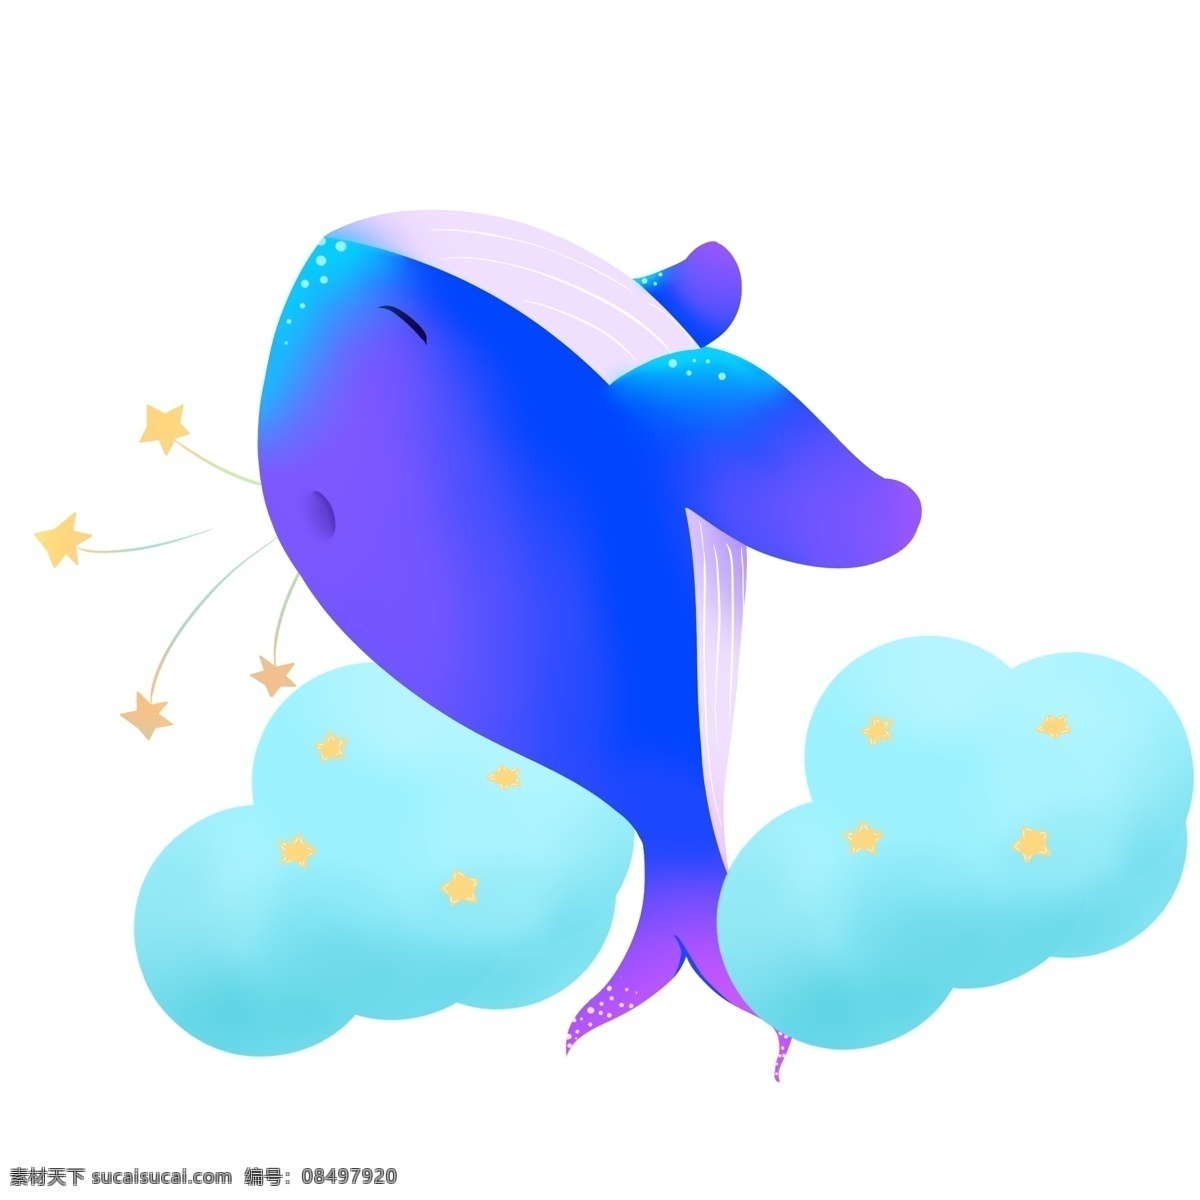 紫色 梦幻 鲸鱼 插画 紫色的鲸鱼 梦幻鲸鱼 黄色的五角星 蓝色 云朵 手绘鲸鱼